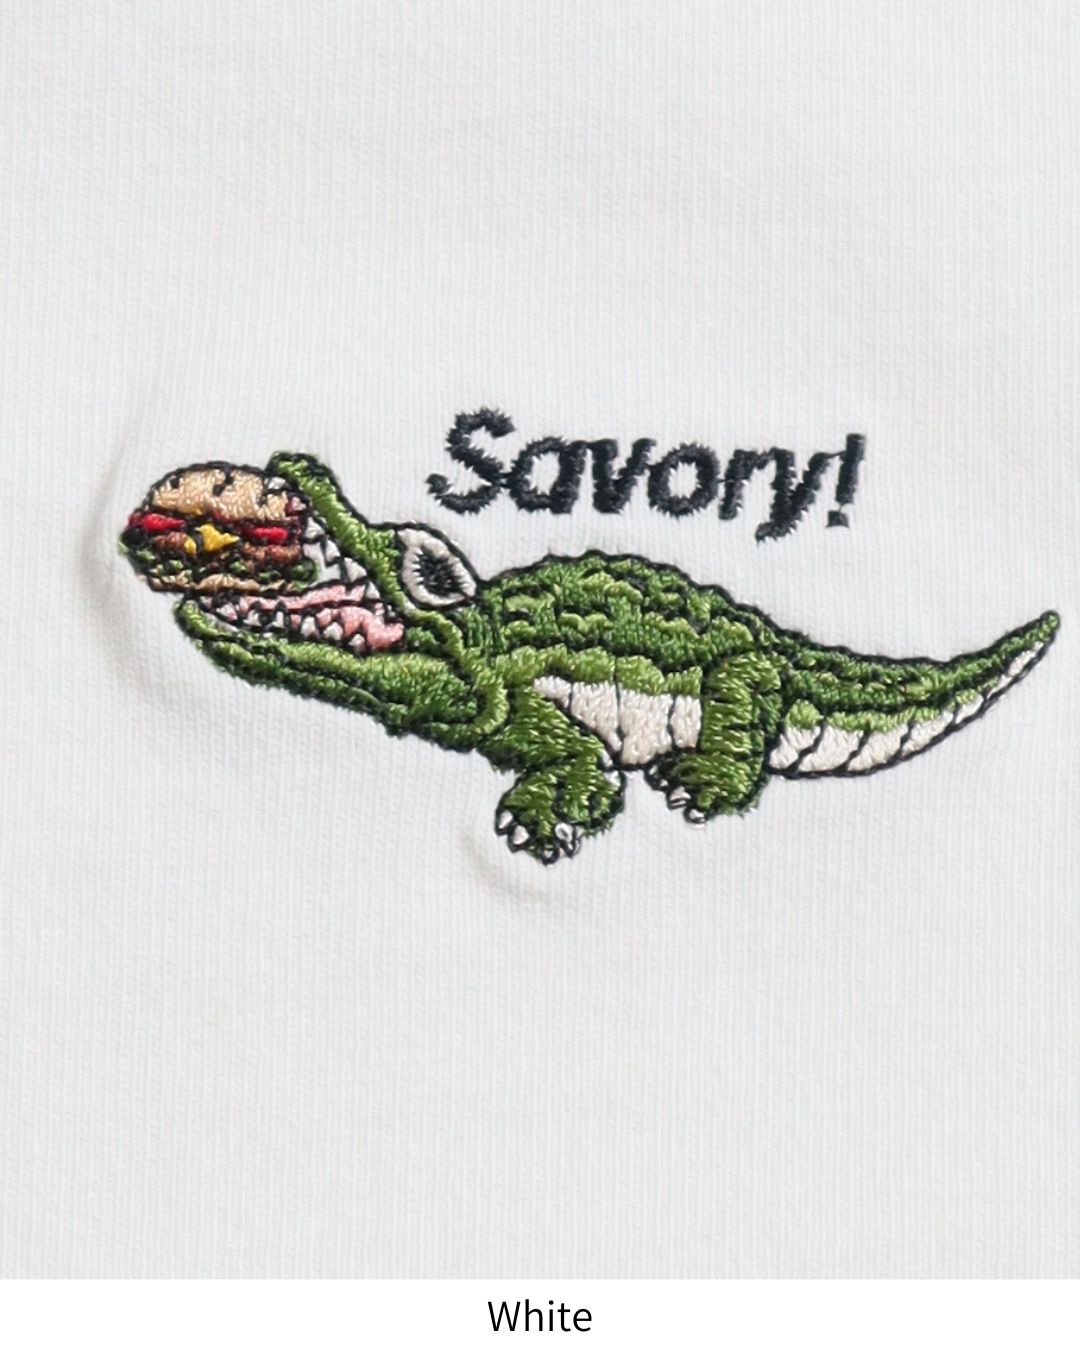 恐竜ワンポイントTシャツ